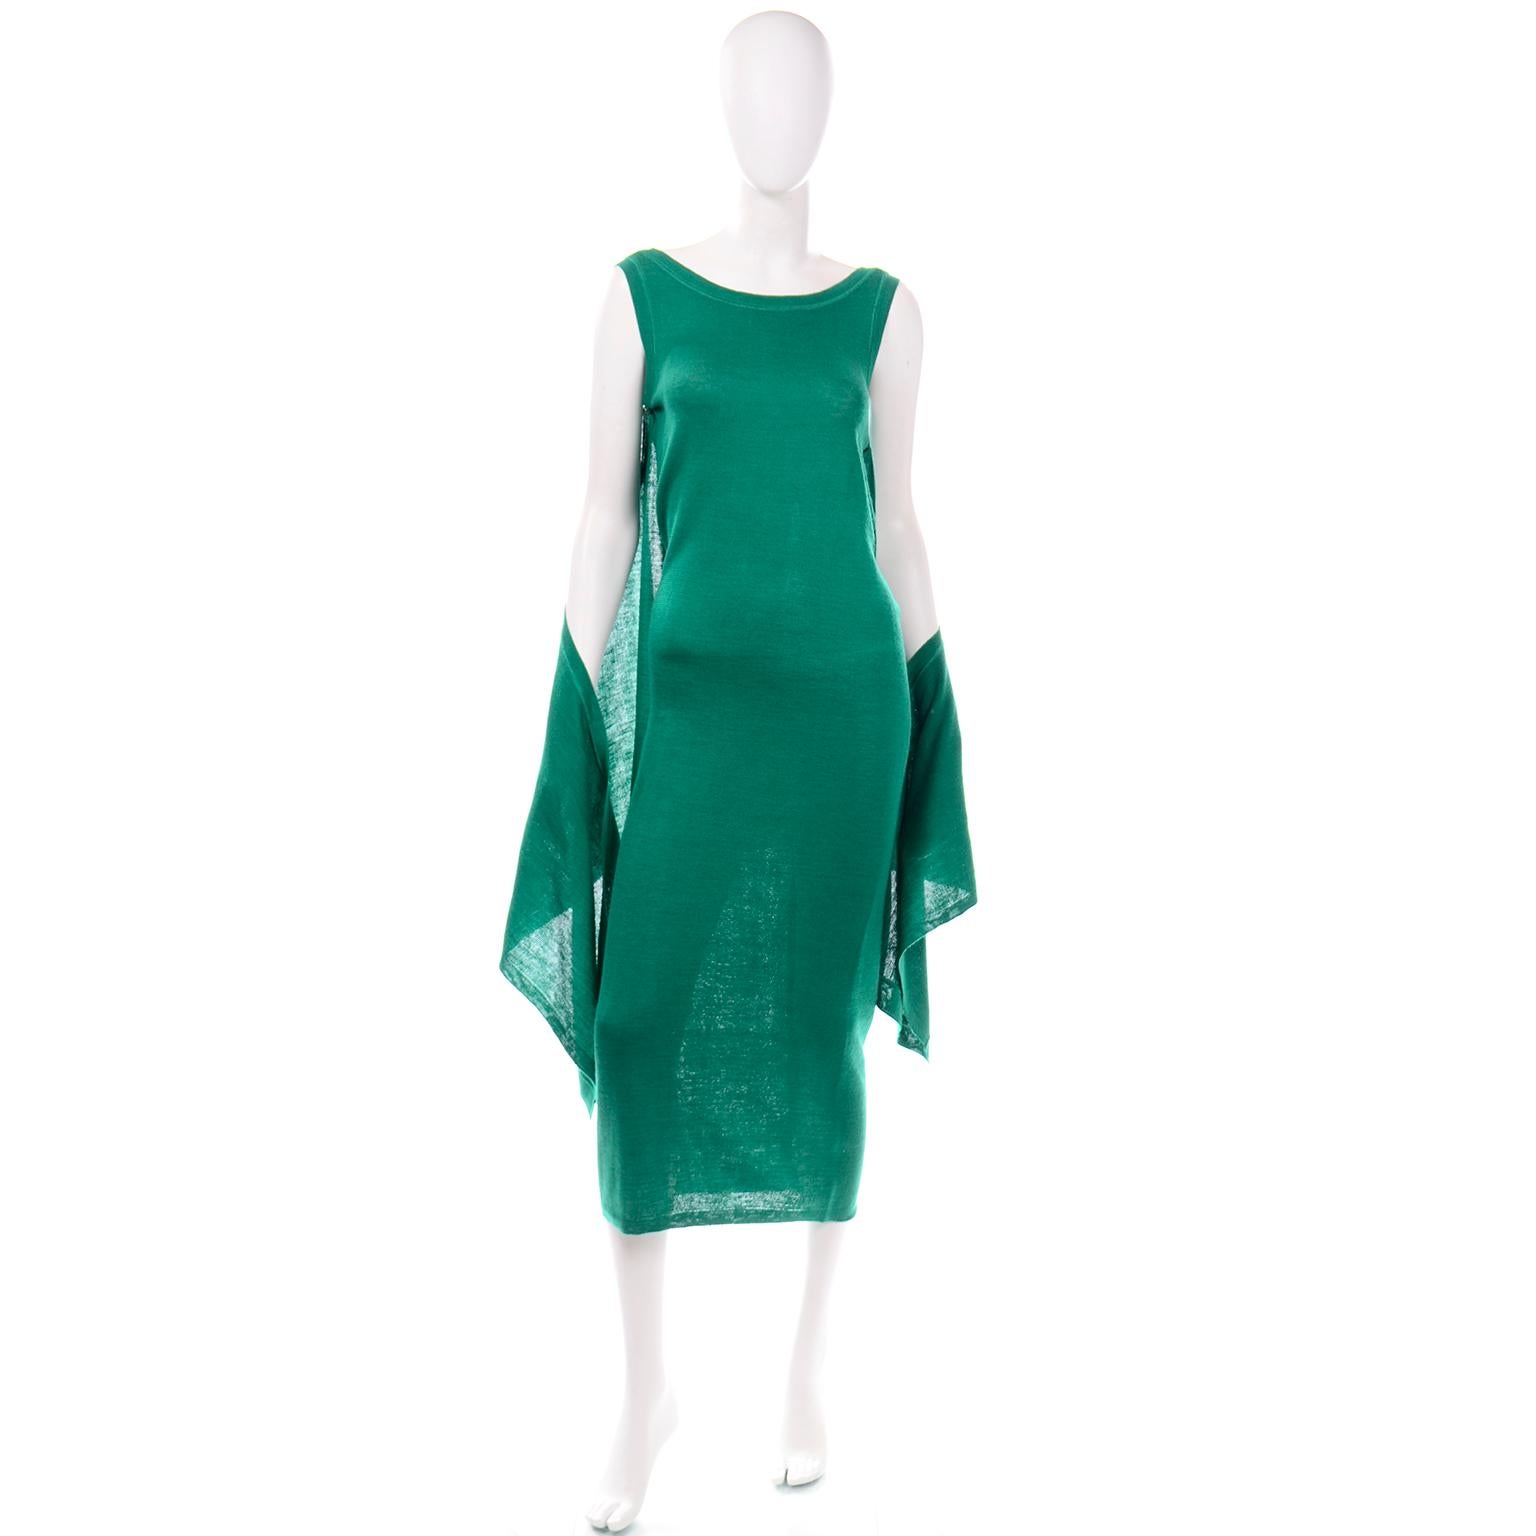 Cette robe vintage Angelo Tarlazzi en tricot extensible vert est incroyablement polyvalente ! La robe est en tricot extensible vert émeraude avec des bords côtelés semblables à ceux d'un tee-shirt. Nous aimons particulièrement le panneau de tissu